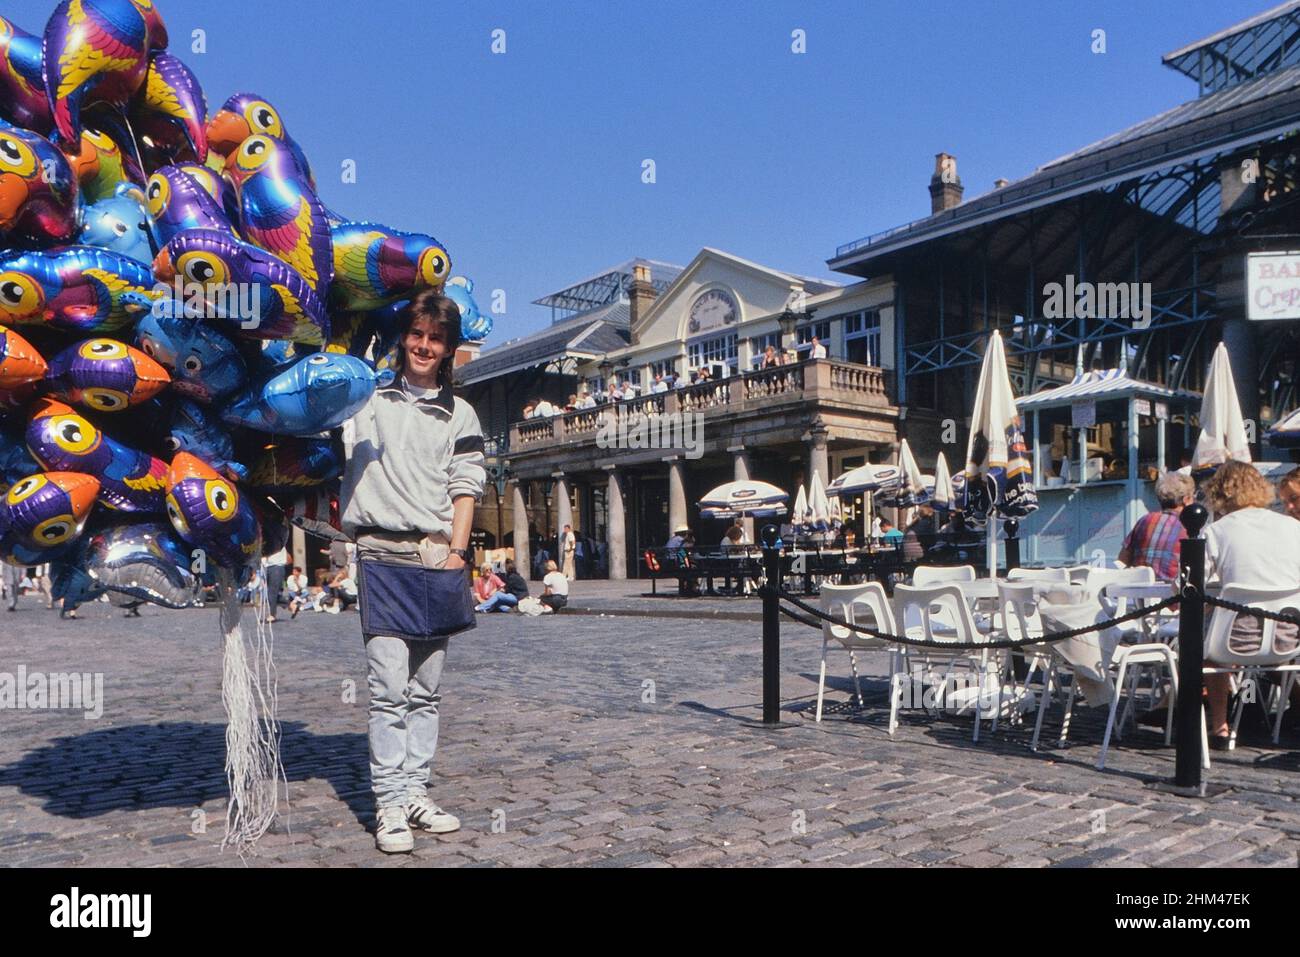 Balloon seller, Covent Garden, London, England, UK. Circa 1980's Stock Photo